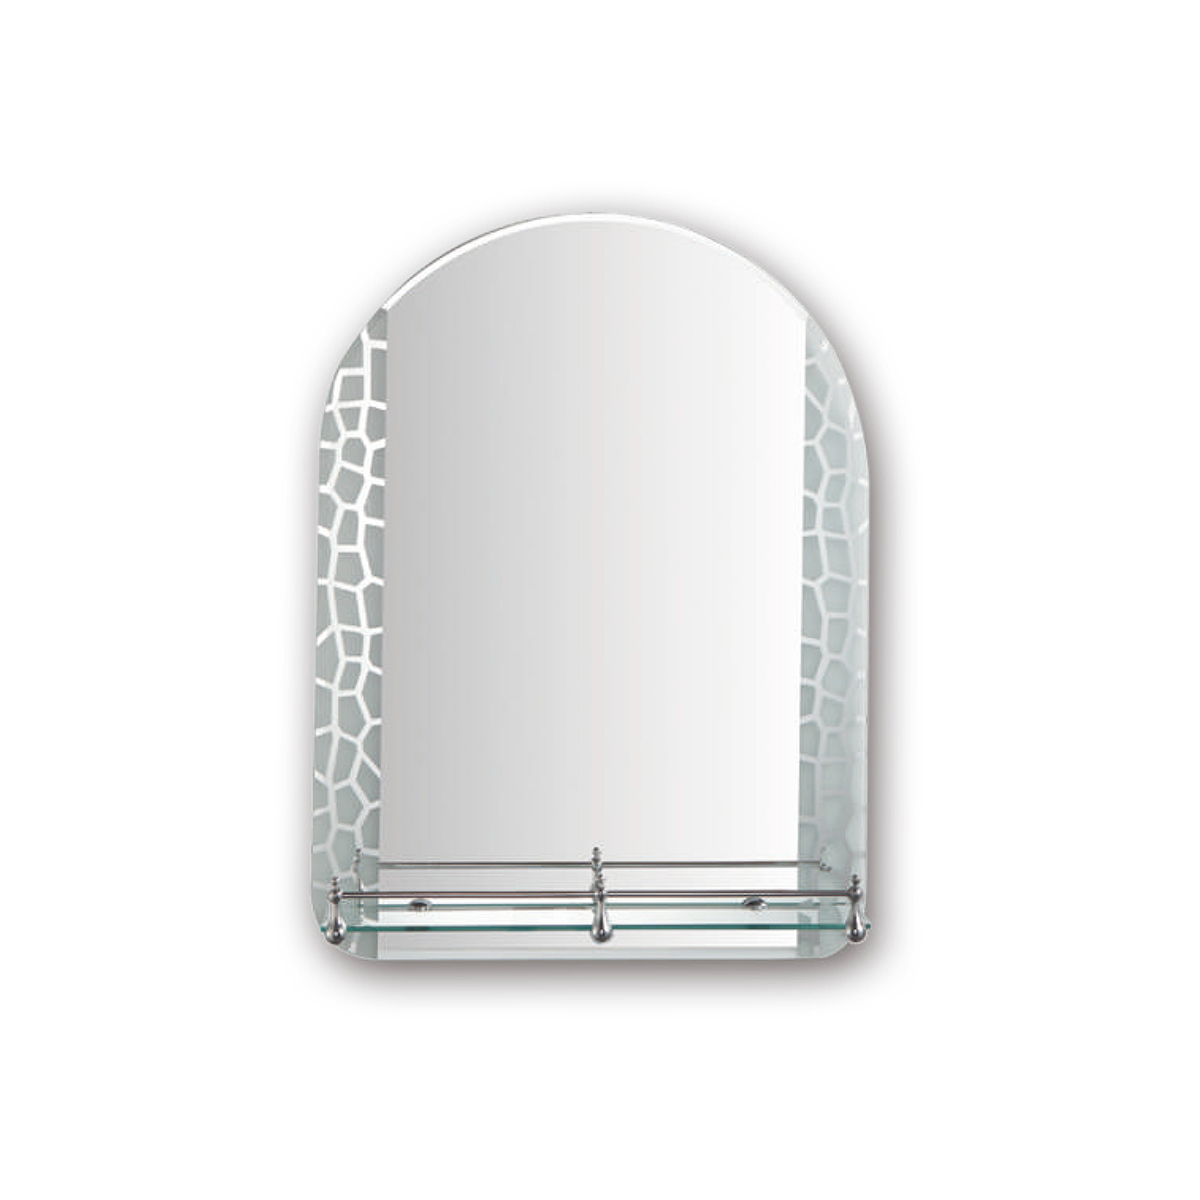 Зеркало фигурное Frap F694, с полкой, 60 x 45 см зеркало фигурное frap f622 45 x 60 см матовое